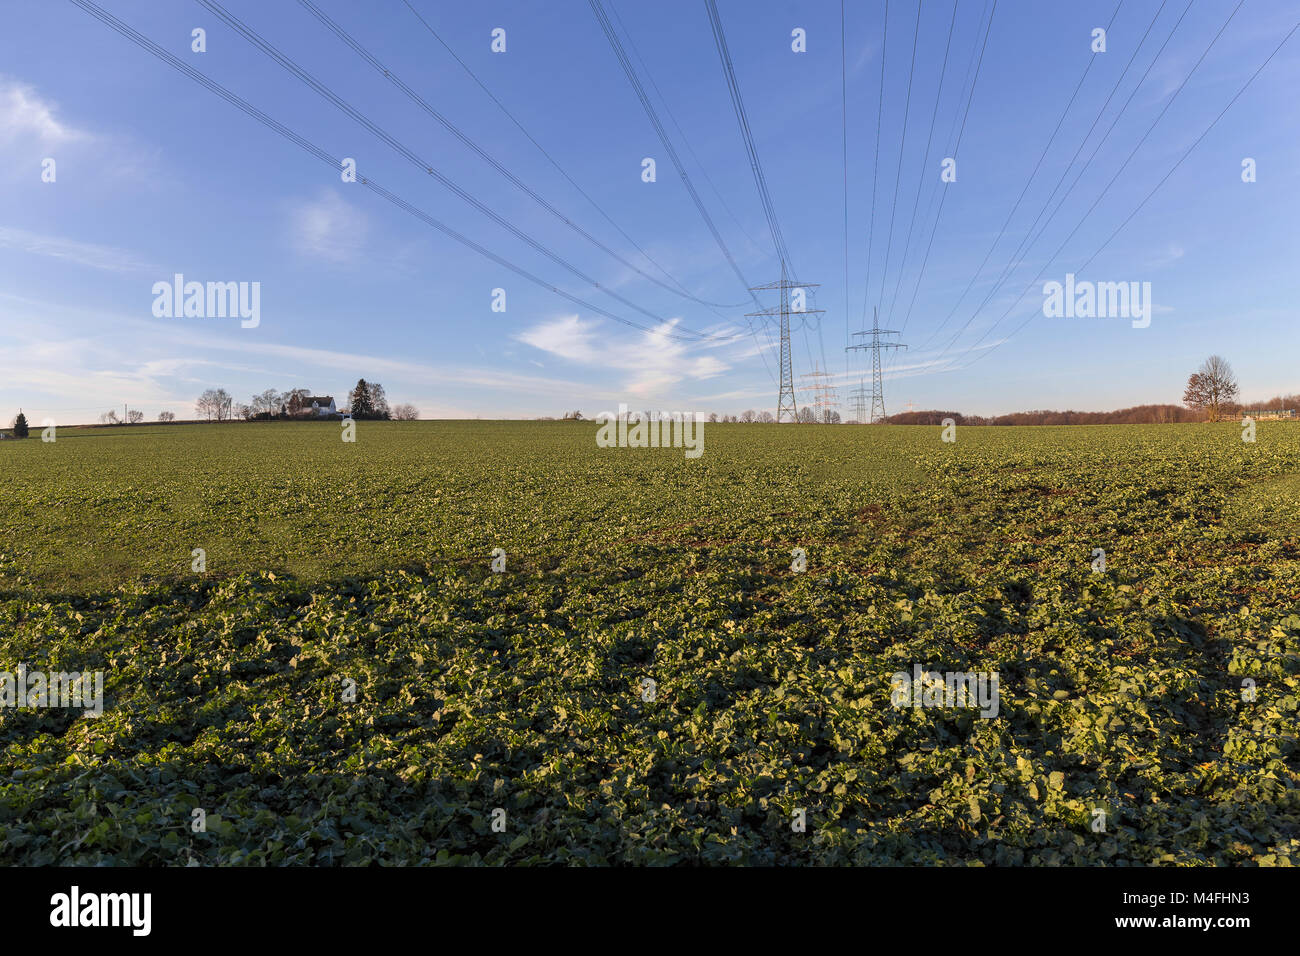 Línea de alimentación a través de un campo con el cielo azul Foto de stock